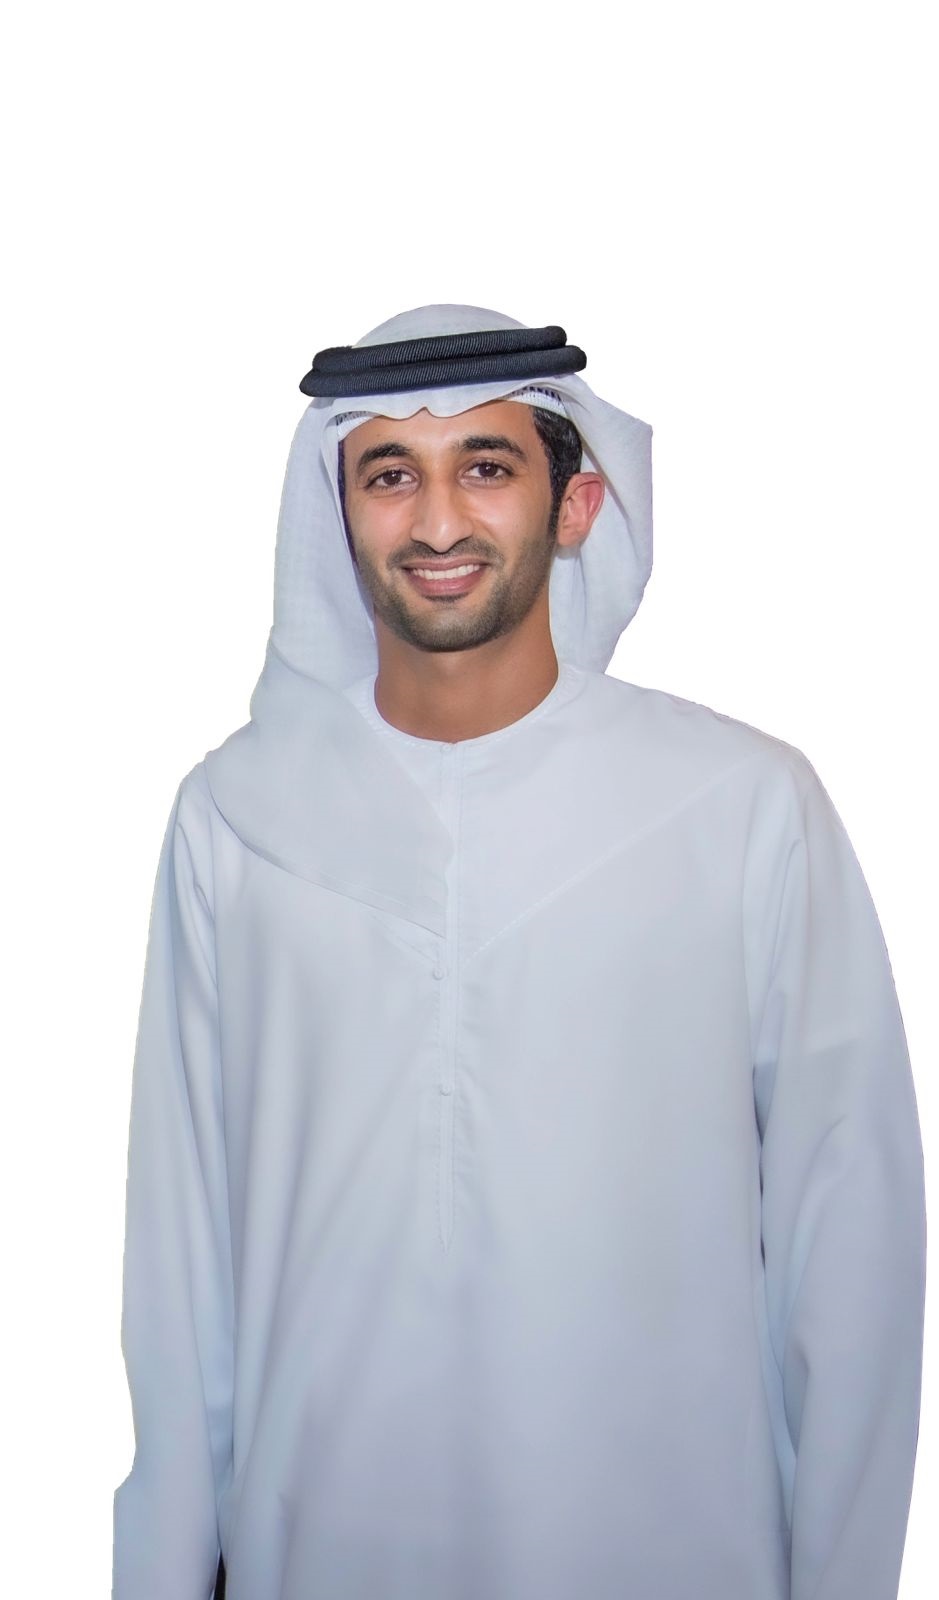 راشد بن دلموك آل مكتوم رئيس نادي دبي للفروسية ونادي دبي لسباق الخيل